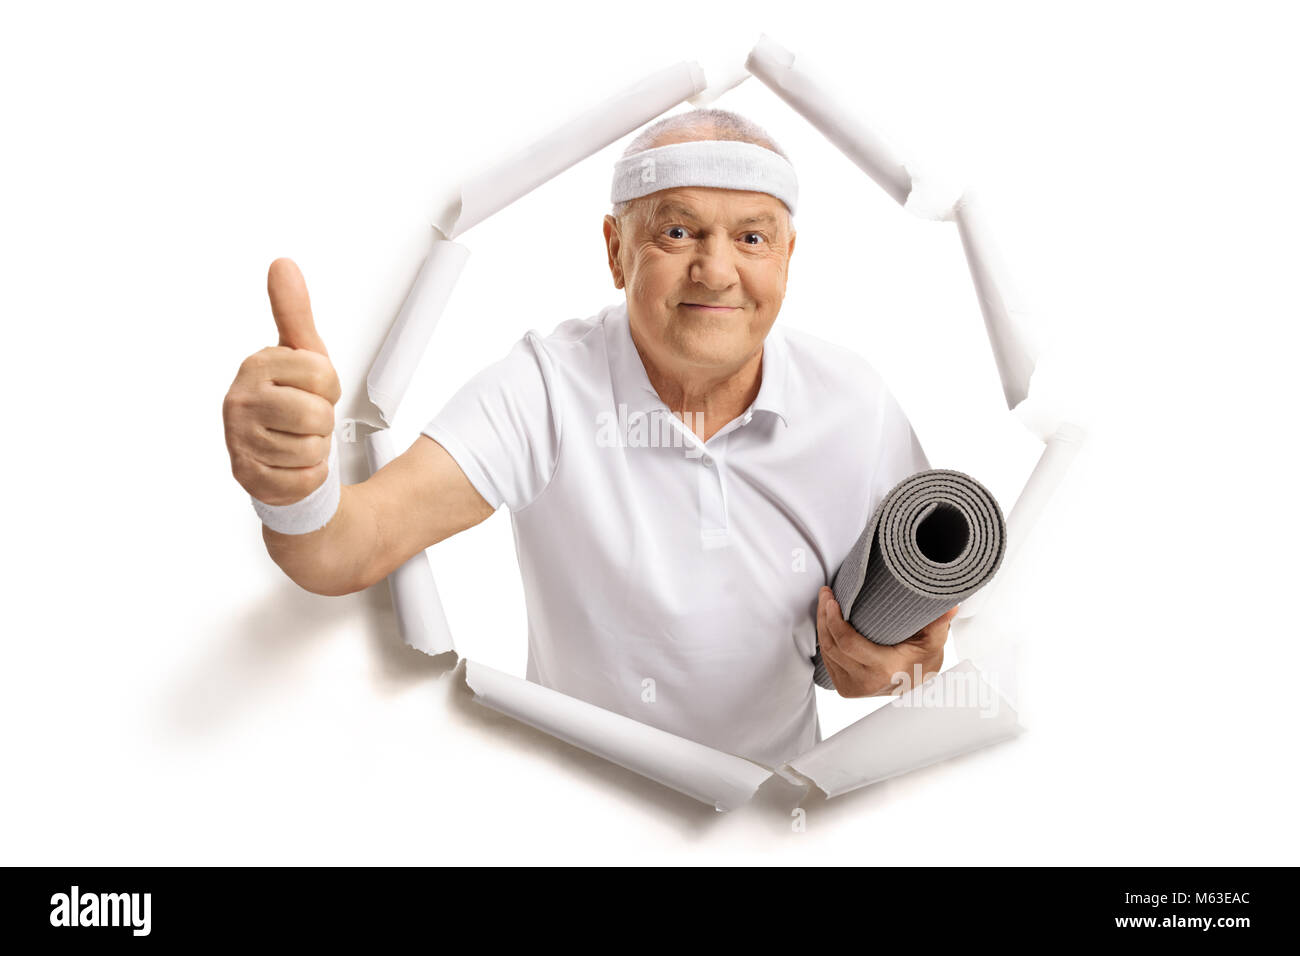 Personnes âgées sportsman avec un tapis d'exercice briser de papier et en un thumb up sign Banque D'Images